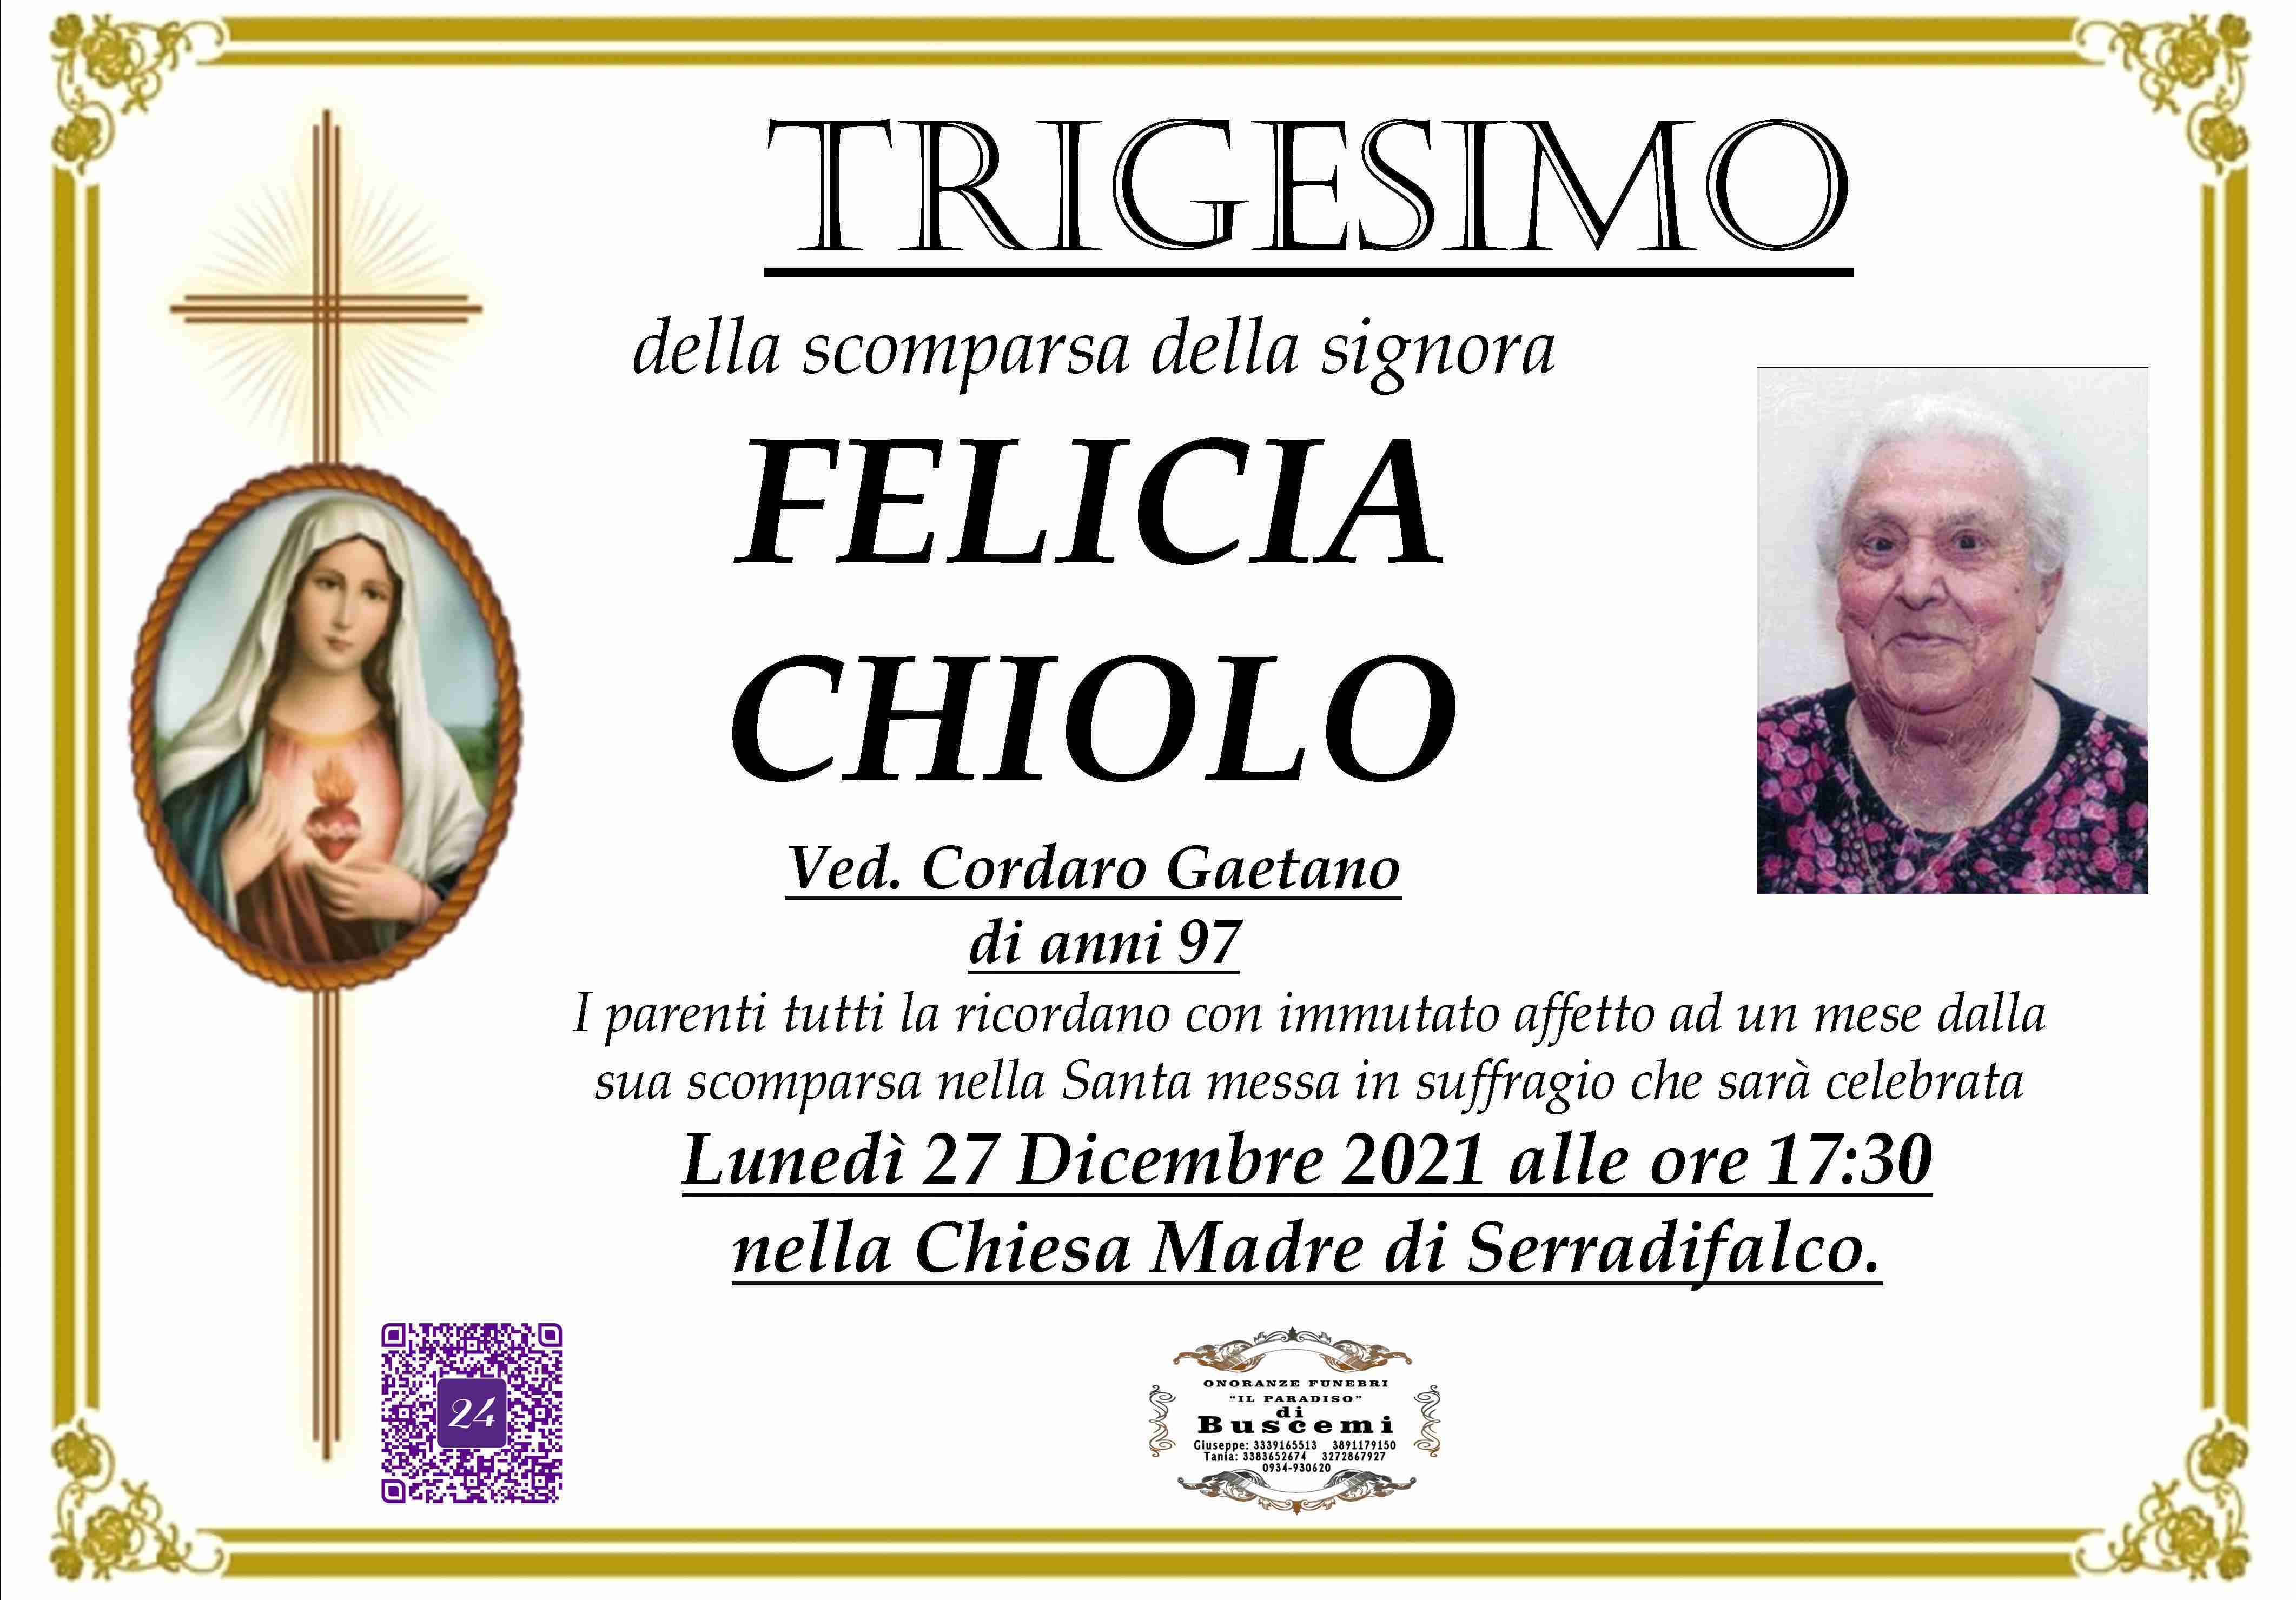 Felicia Chiolo